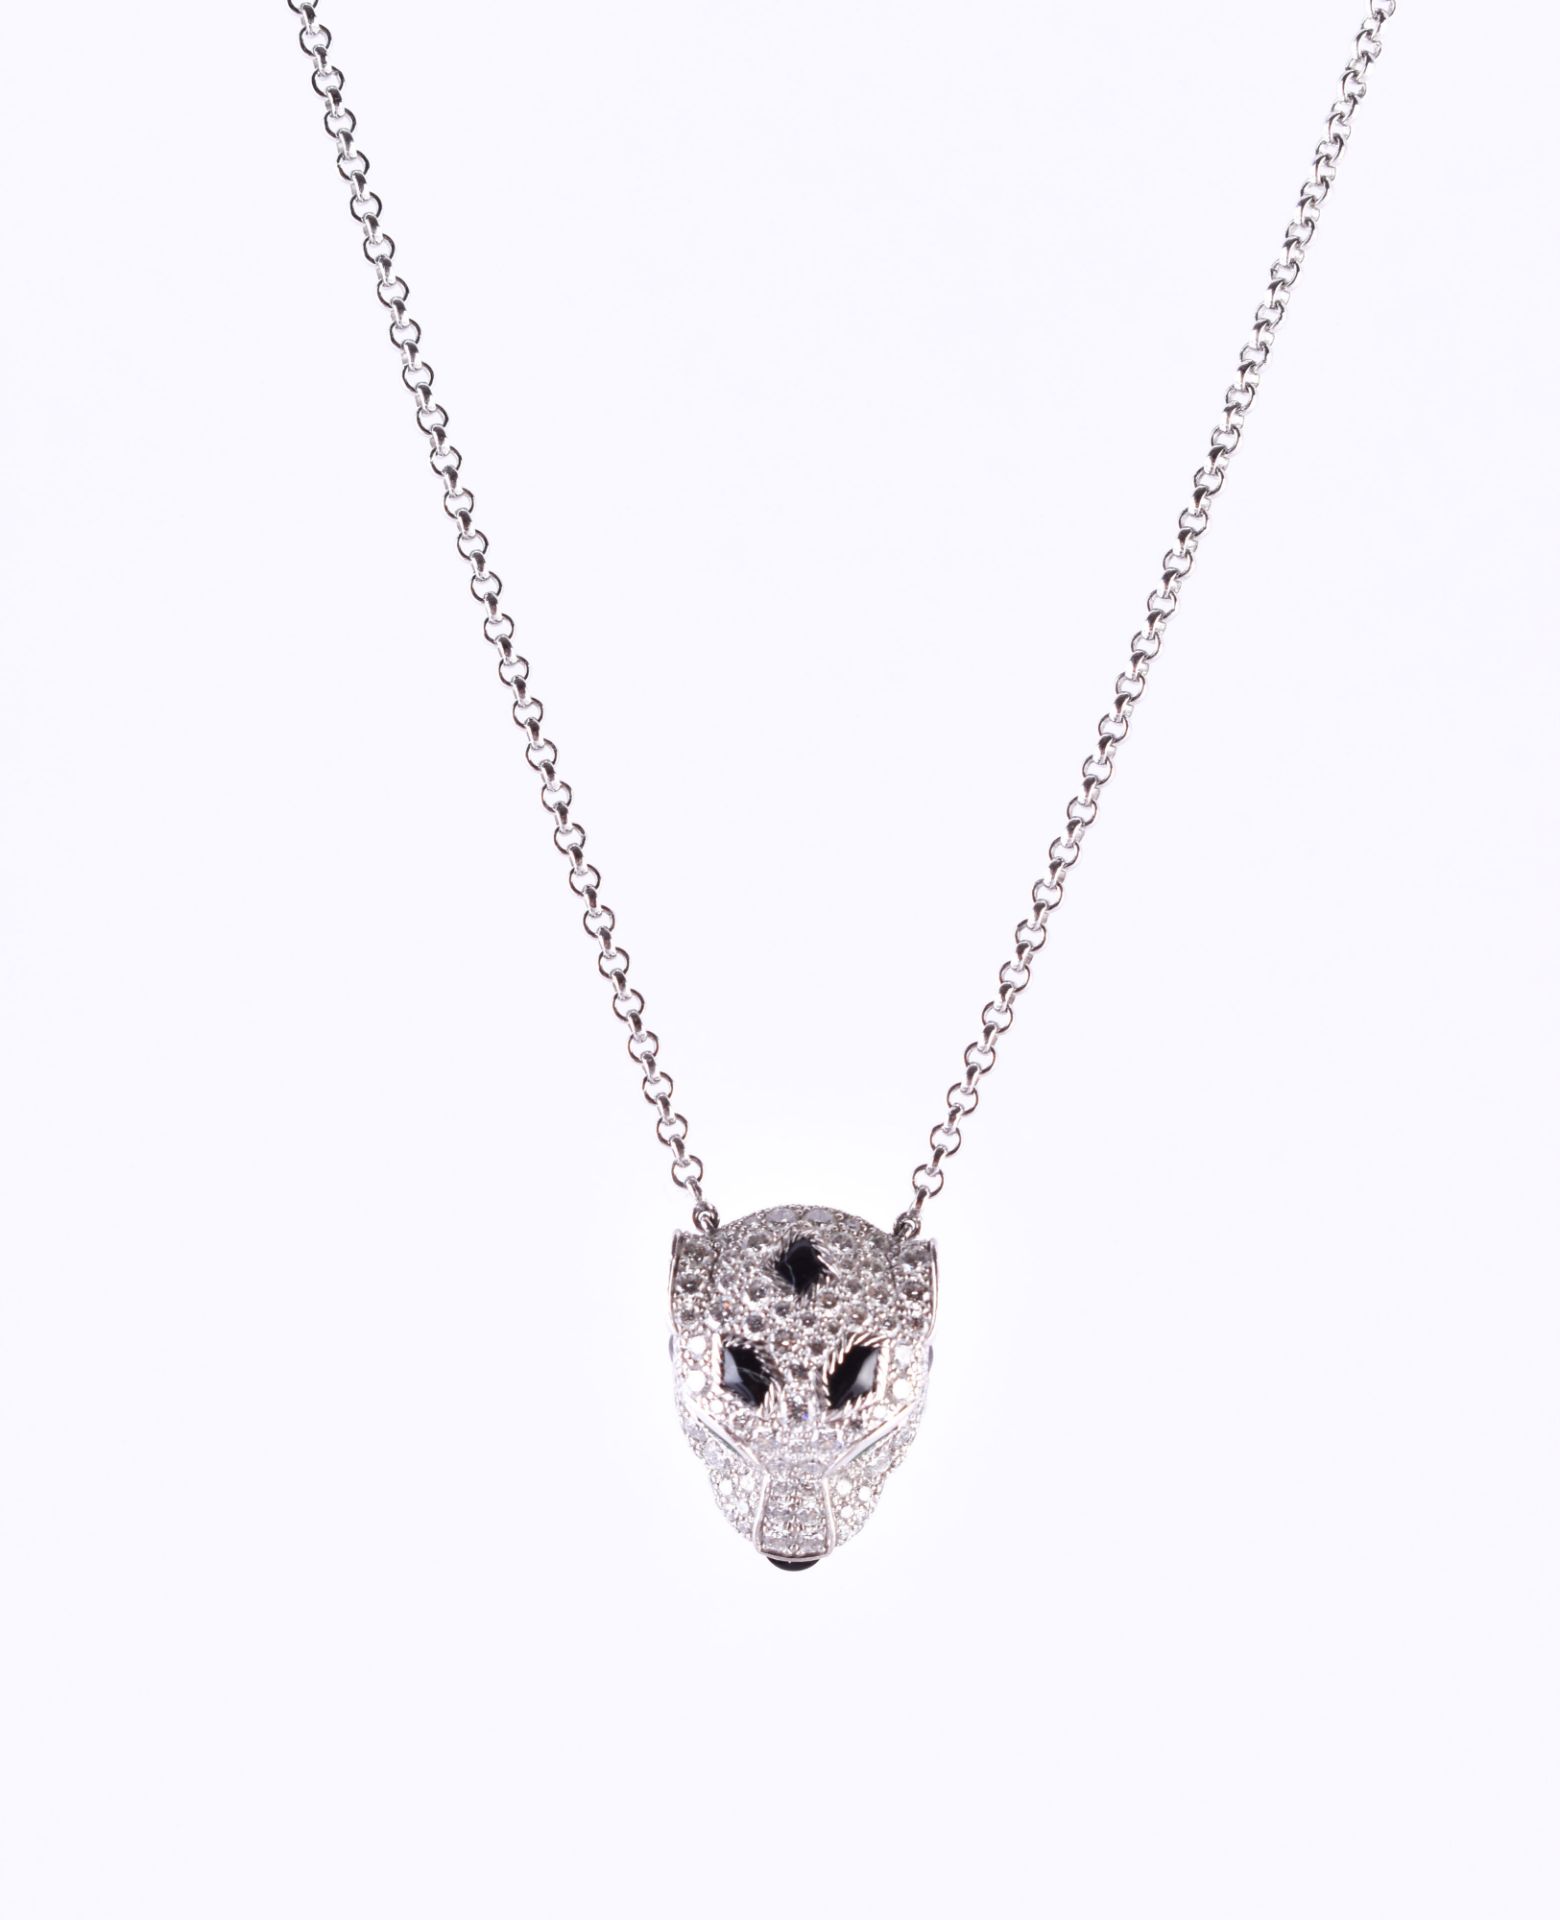 Panthére de Cartier necklace - Image 2 of 6